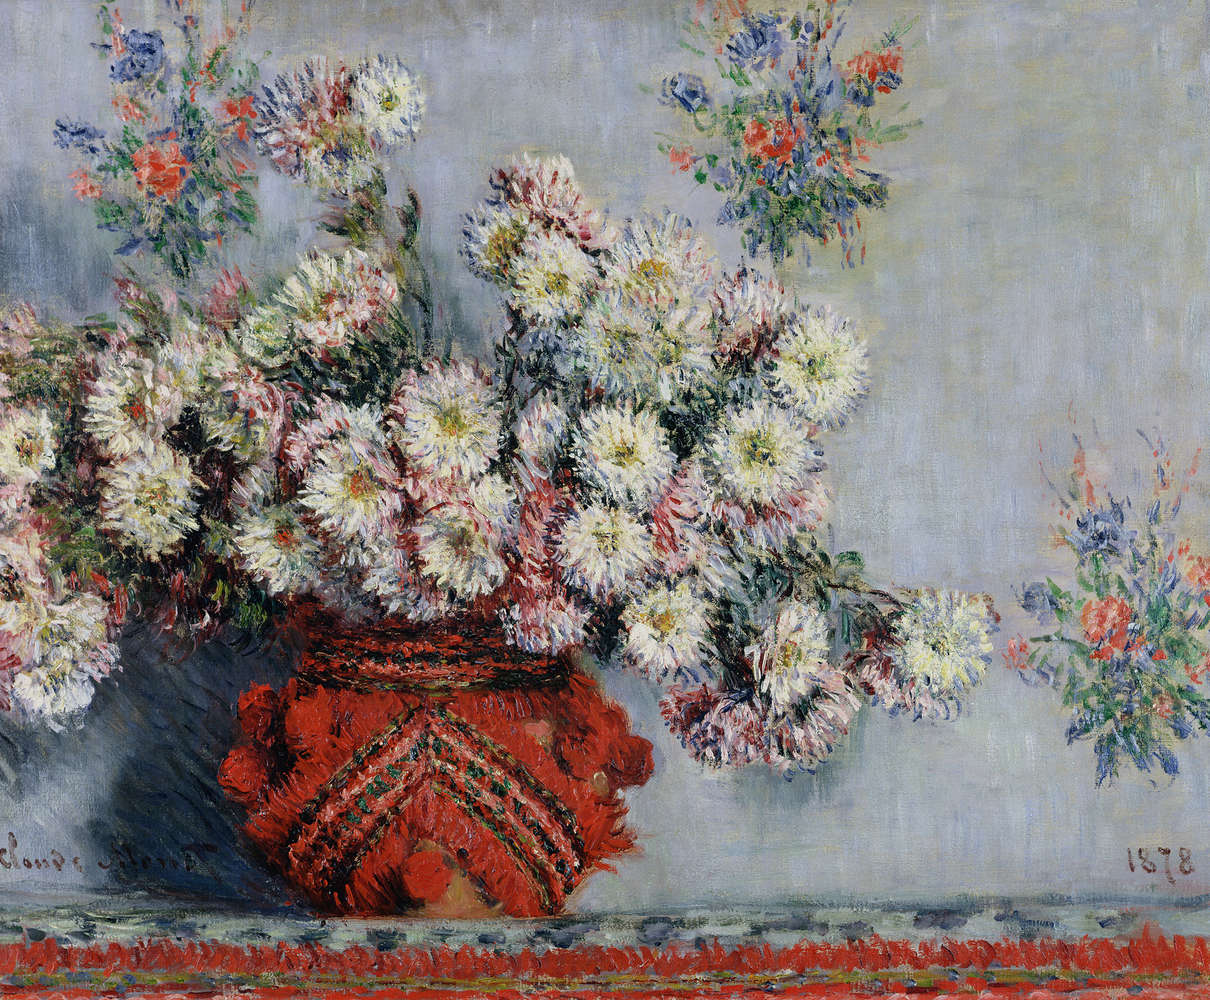             Papier peint panoramique "Chrysanthèmes" de Claude Monet
        